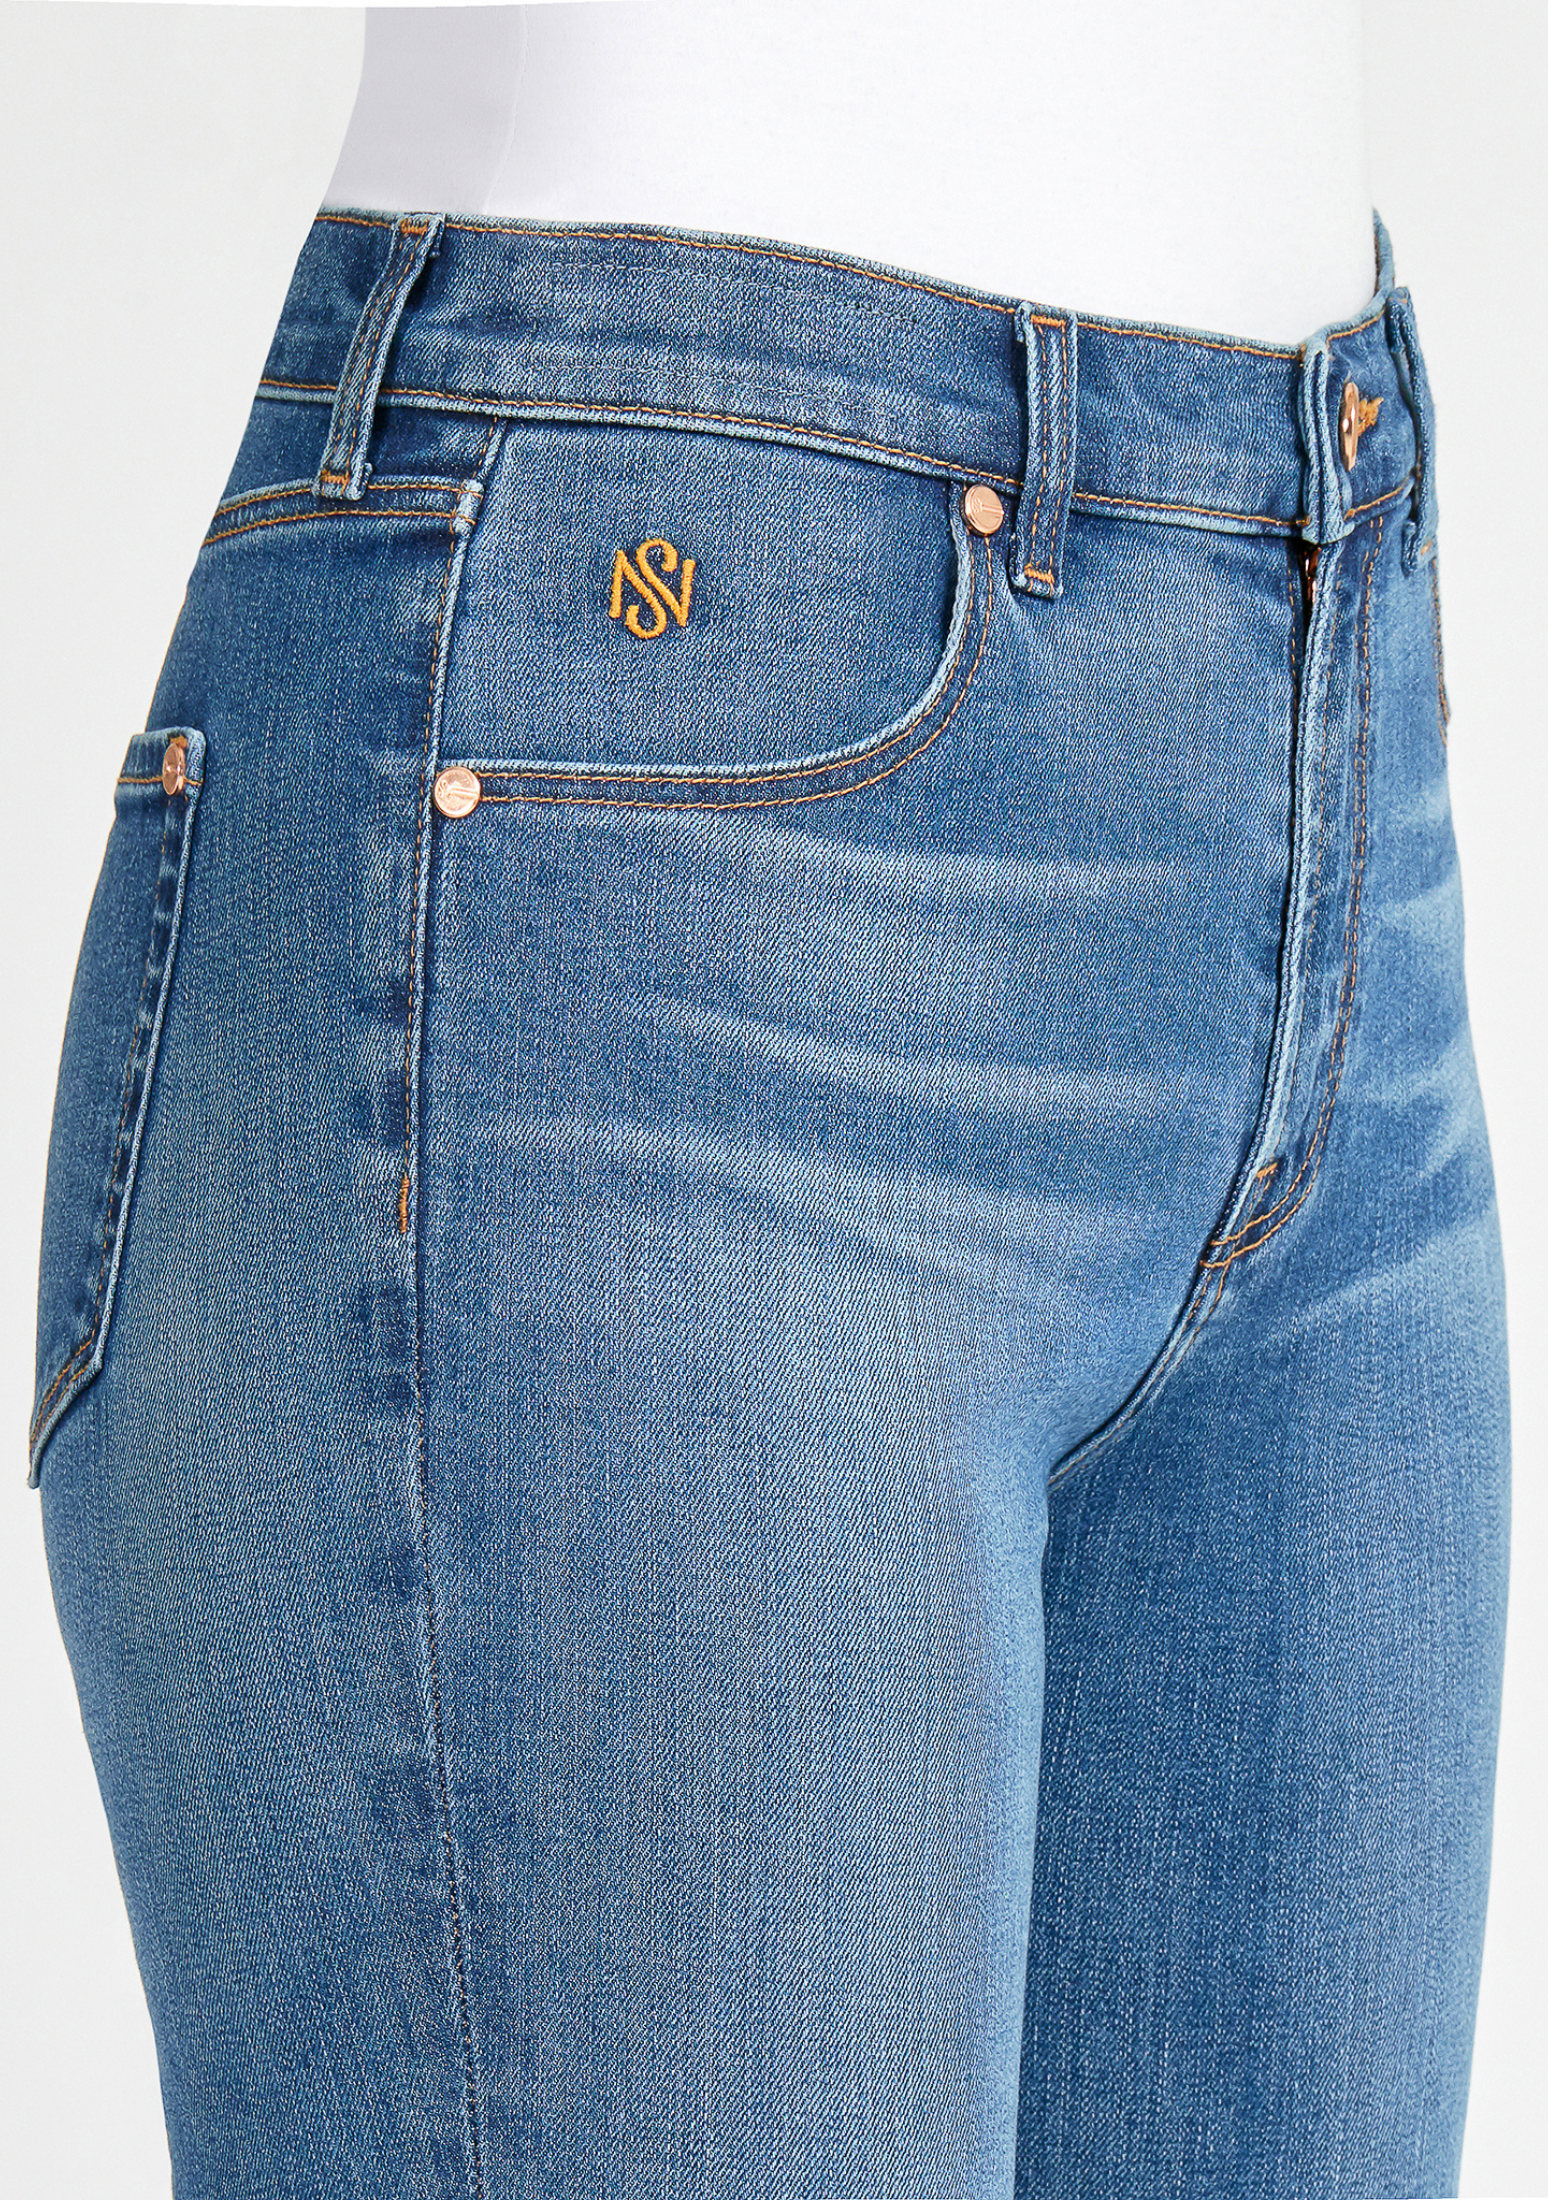 SN19 Women's Akira Skinny Denim Jeans Lyon Blue